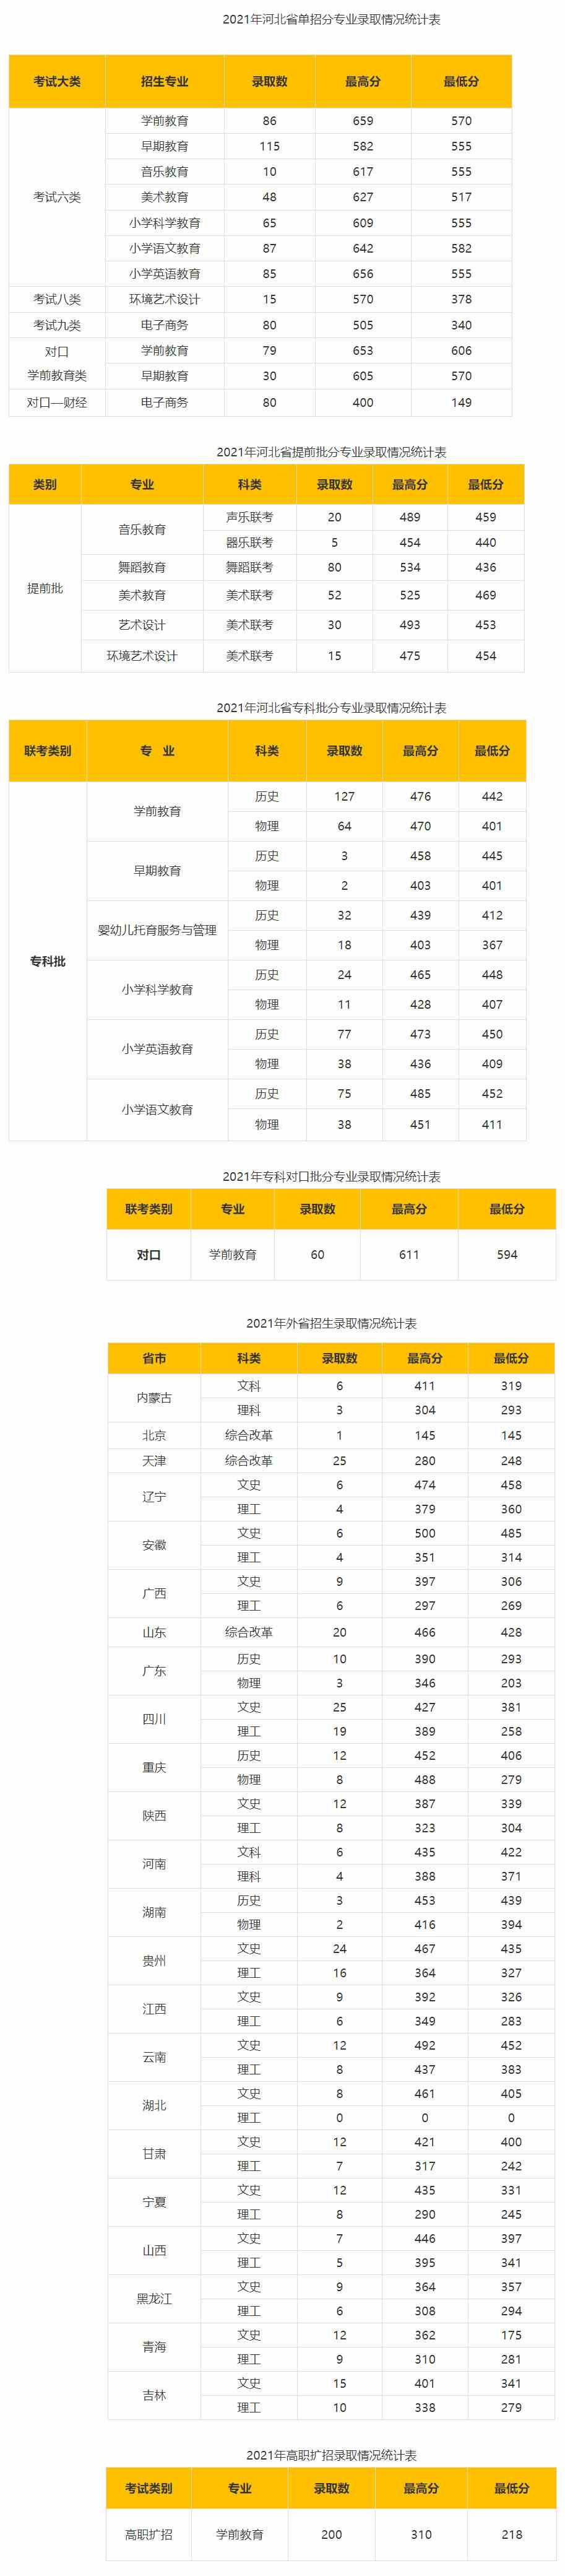 石家庄幼儿师范高等专科学校2021年录取分数统计.jpg